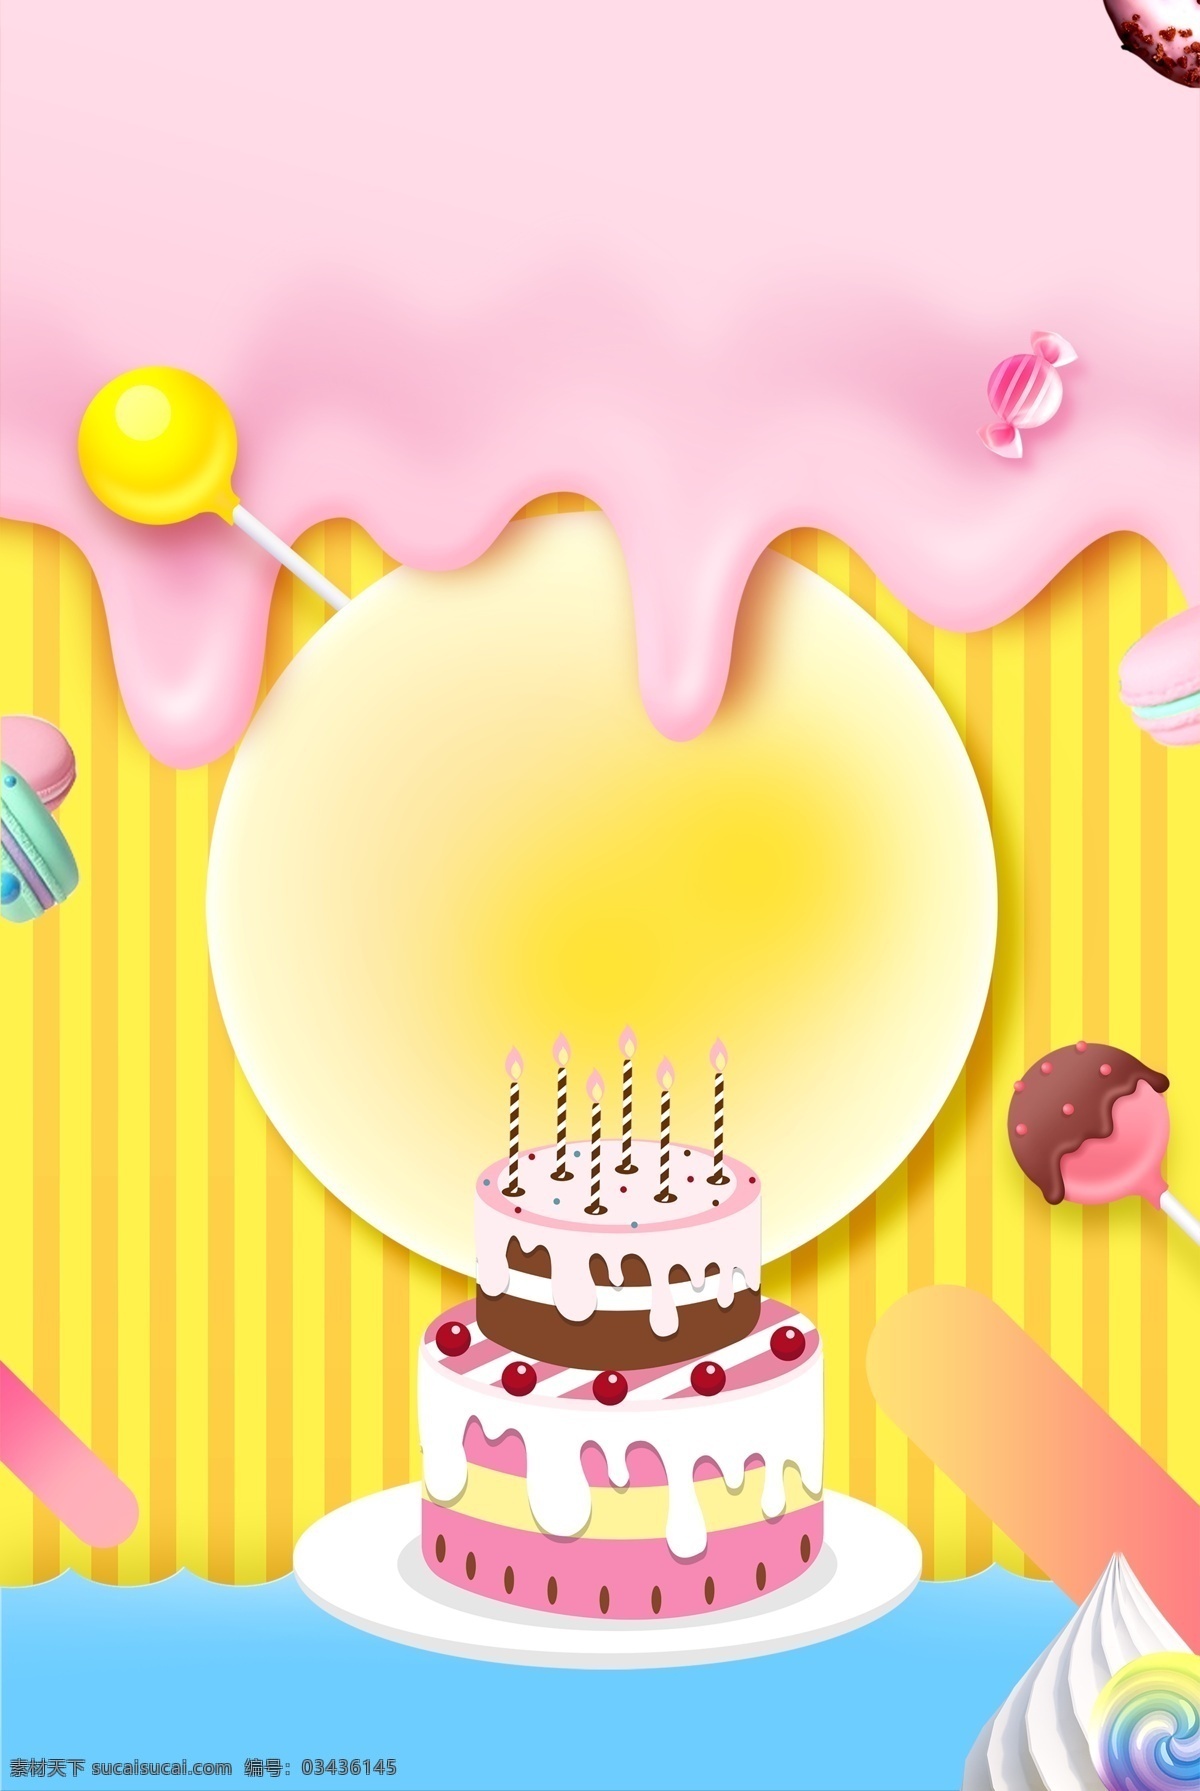 生日 糖果 背景 海报 生日蛋糕 甜品 烘焙 美食 马卡龙配色 可爱